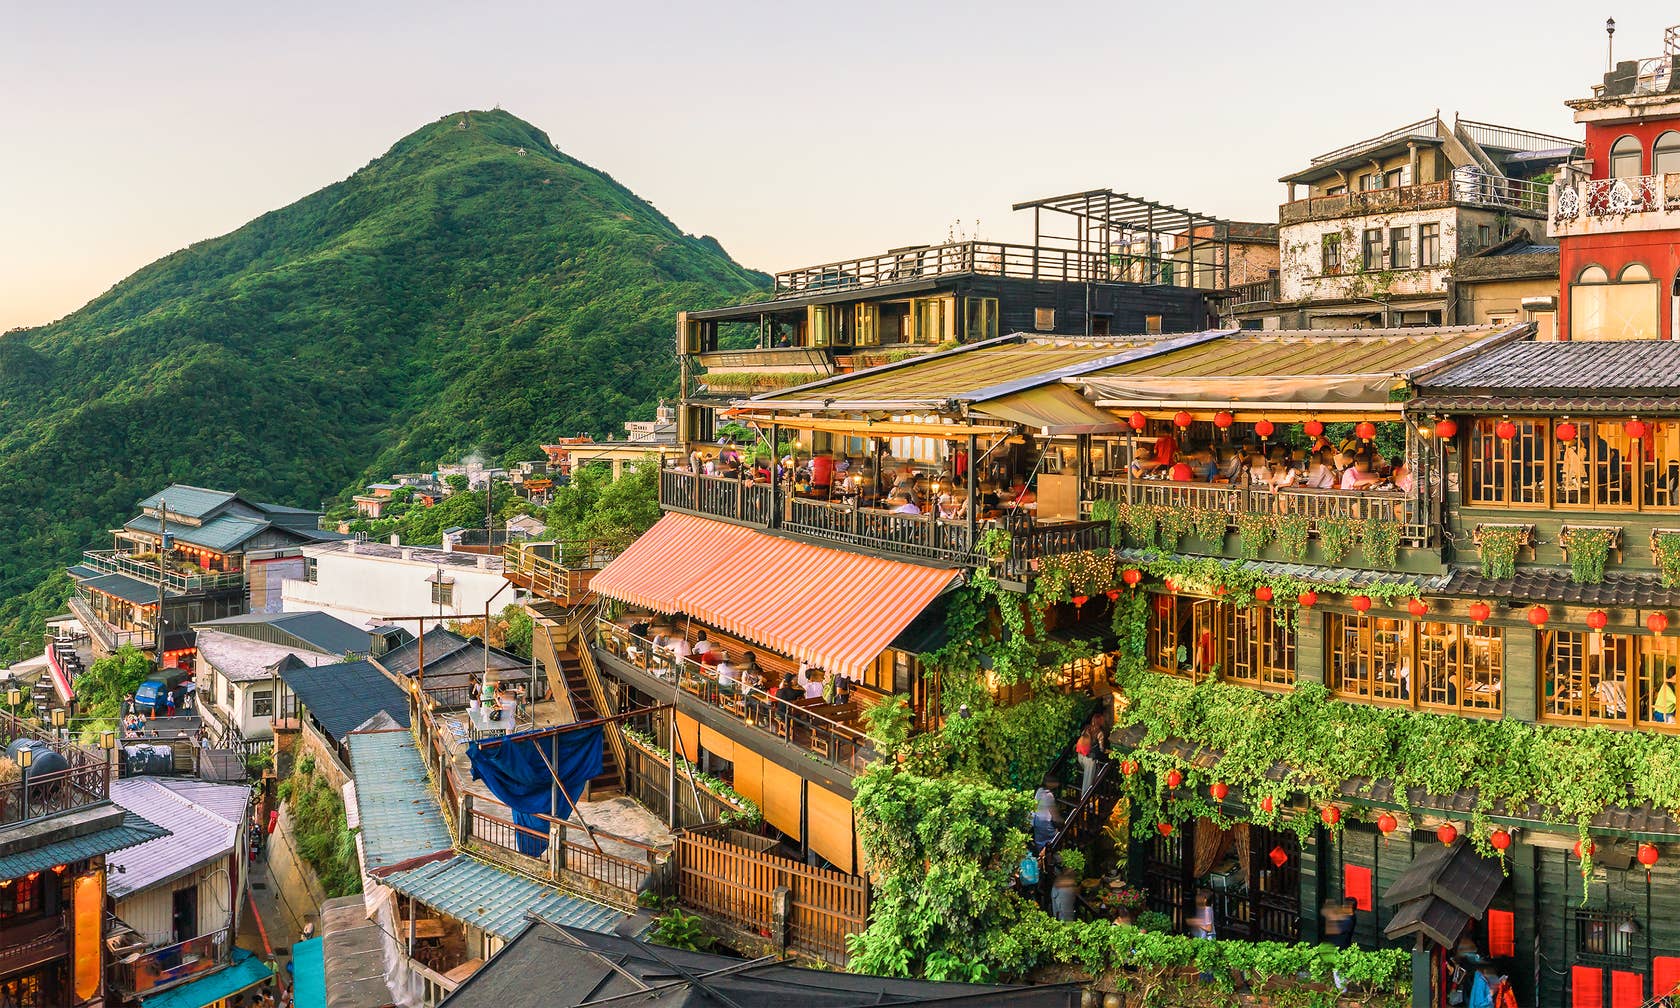 Ενοικιαζόμενοι χώροι για διακοπές στην τοποθεσία Ταϊπέι